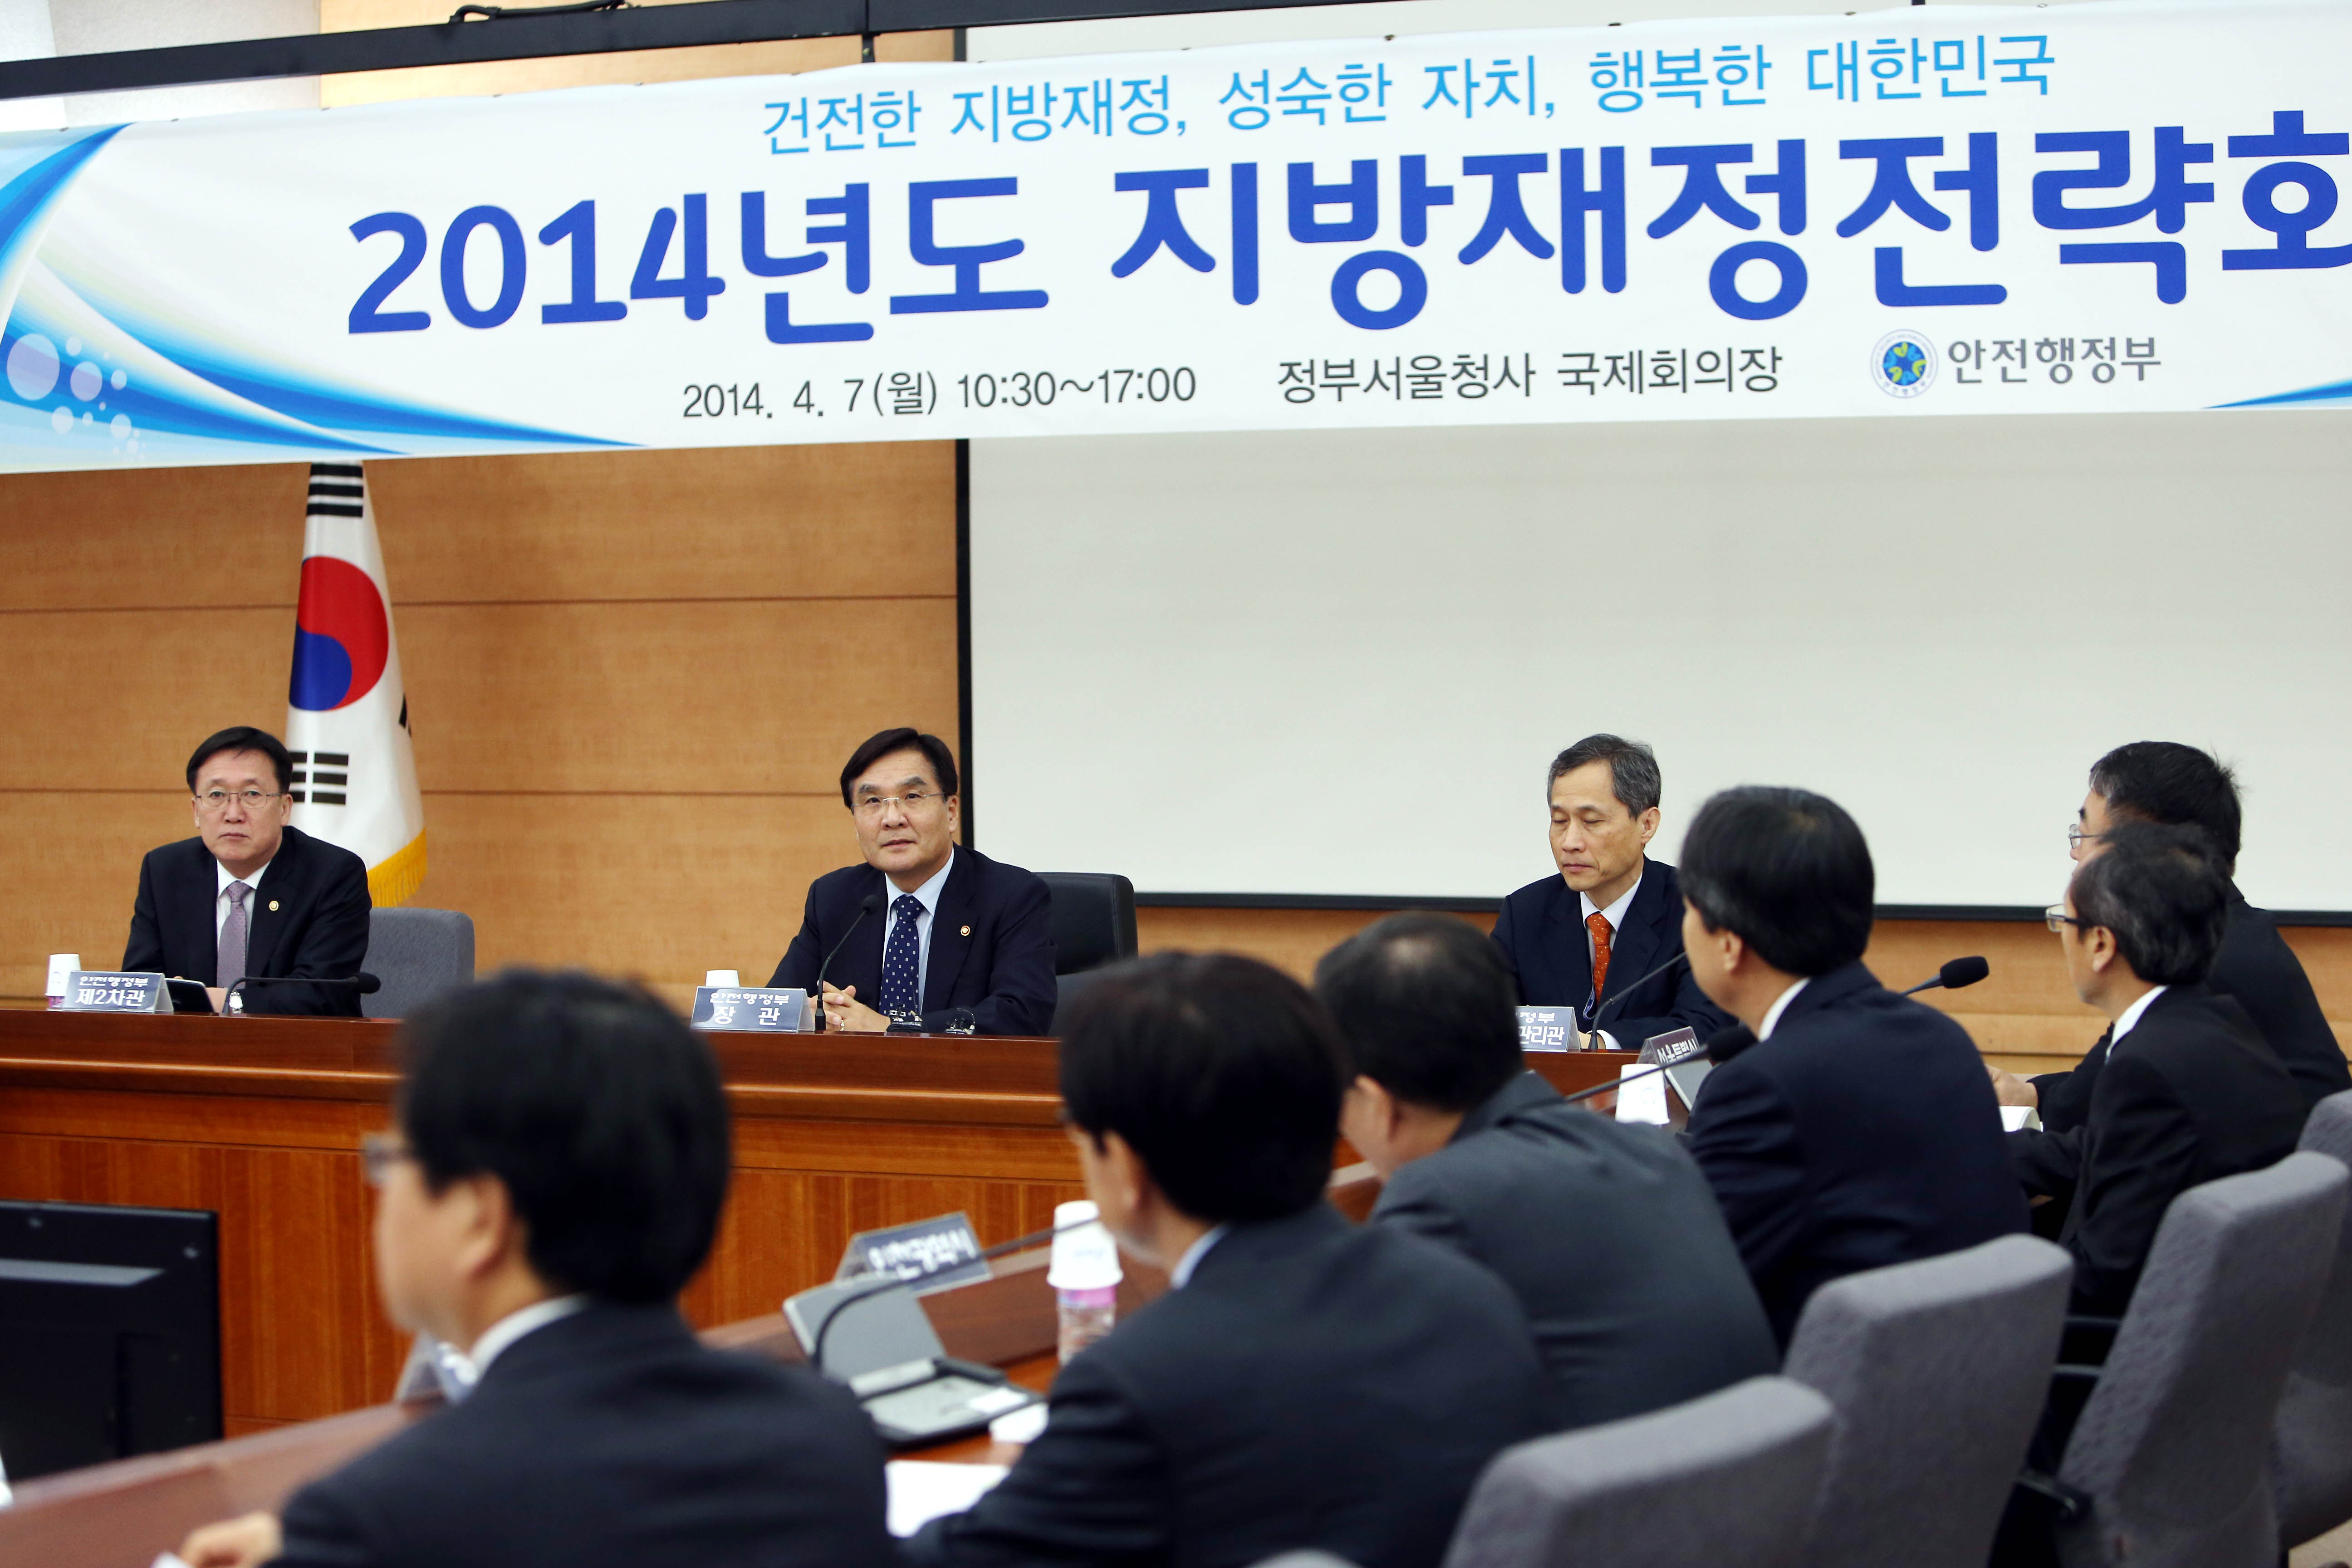 강병규 장관, 2014년도 지방재정전략회의